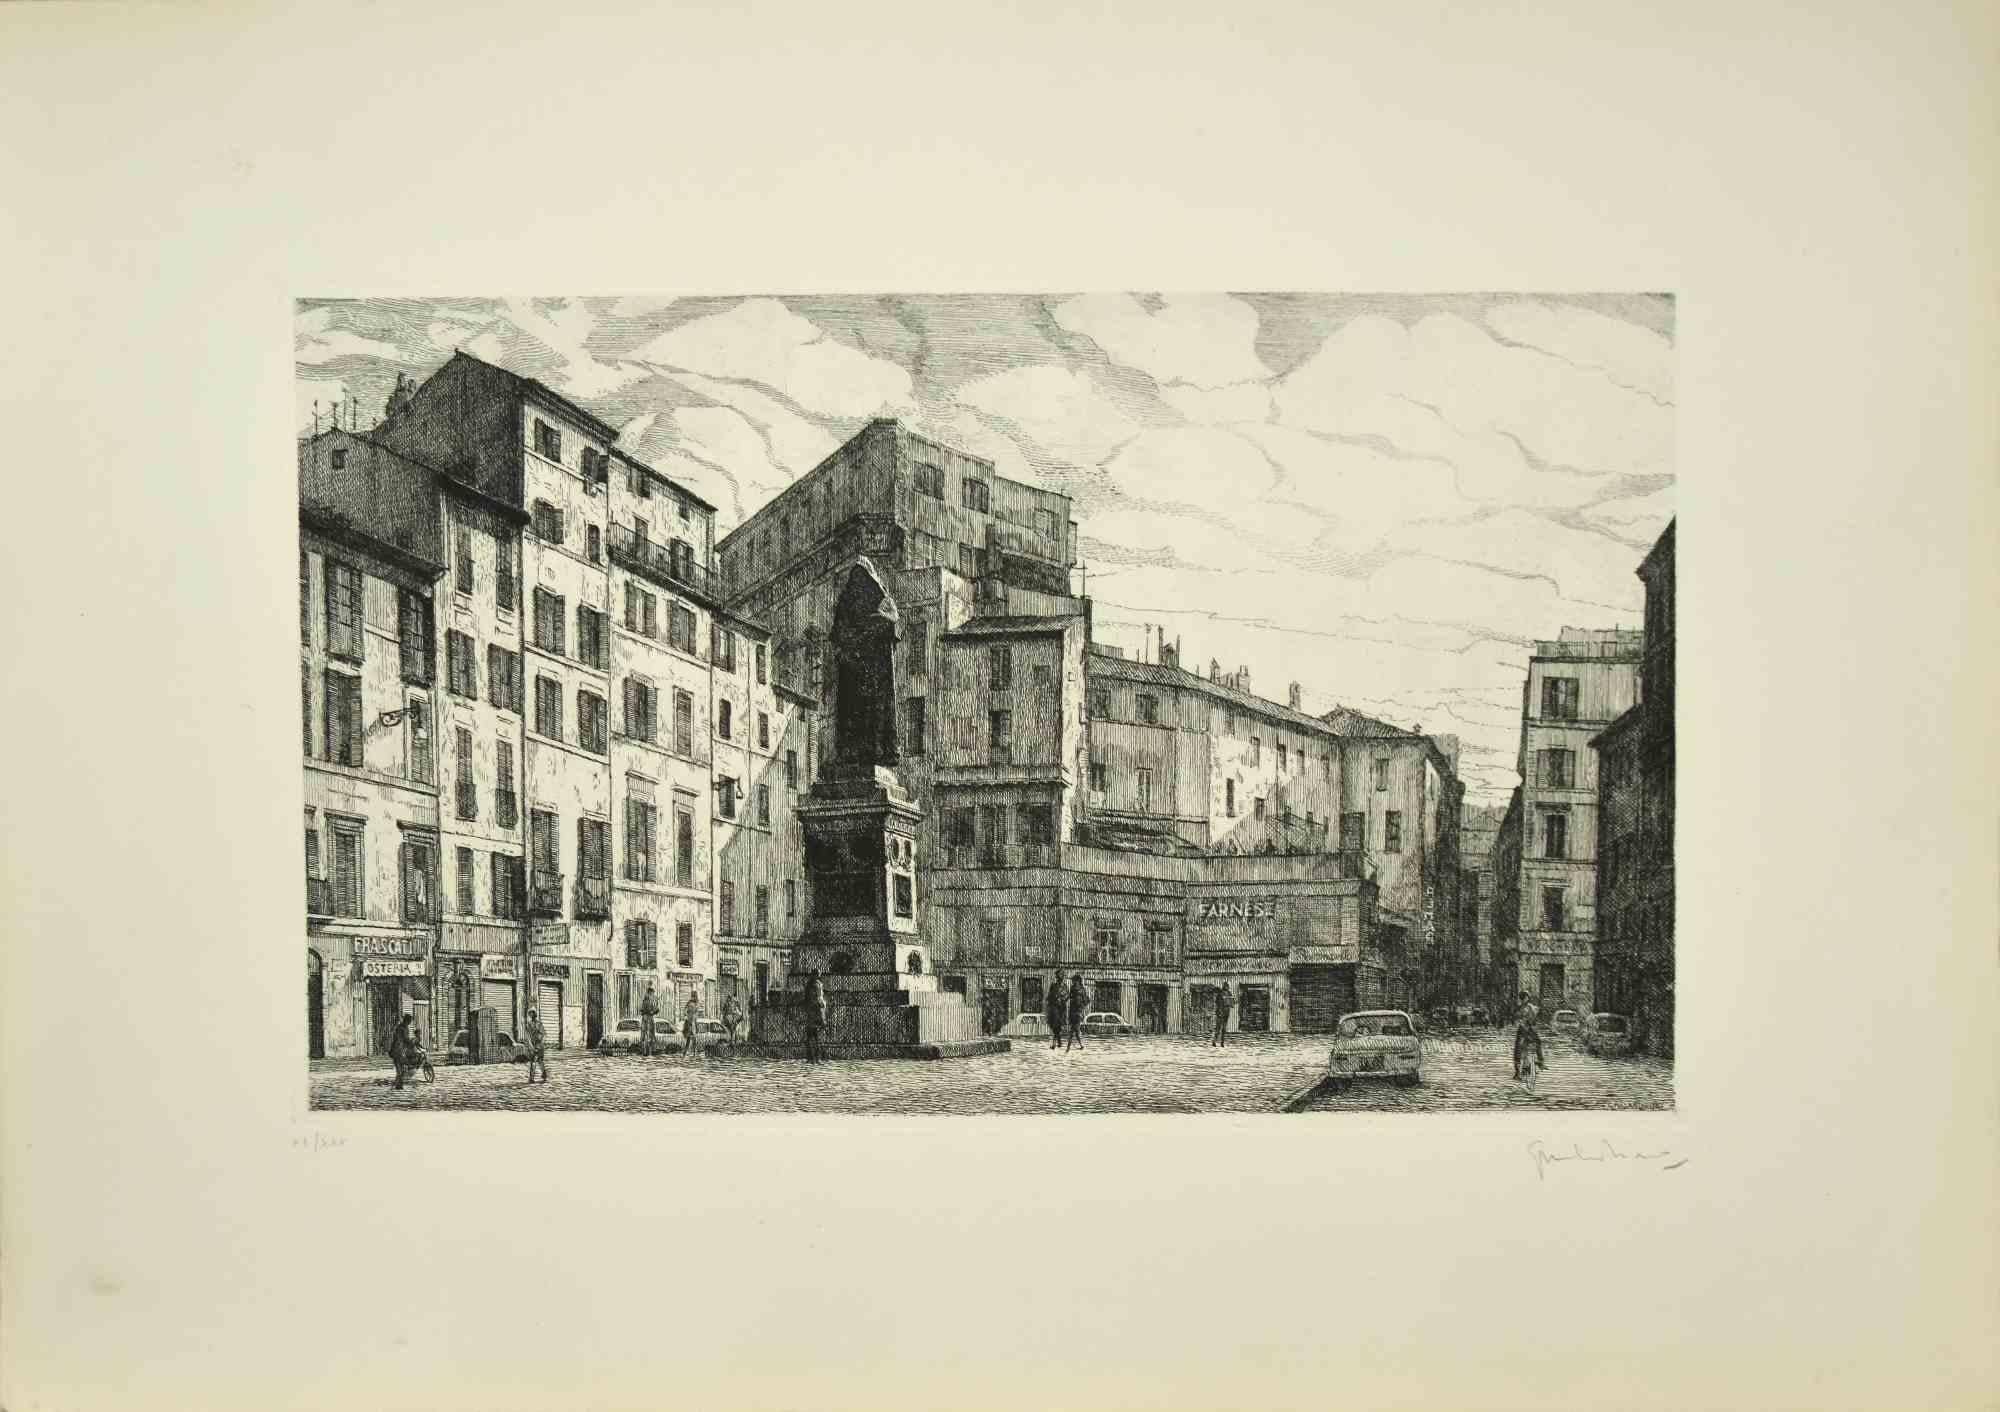 Blick auf die Piazza Campo dé Fiori  ist ein originales zeitgenössisches Kunstwerk, das 1970 von dem italienischen Künstler  Giuseppe Malandrino  (Modica, 1910 - Rom, 1979).
 
Radierung auf Karton.
 
Handsigniert  mit Bleistift in der rechten